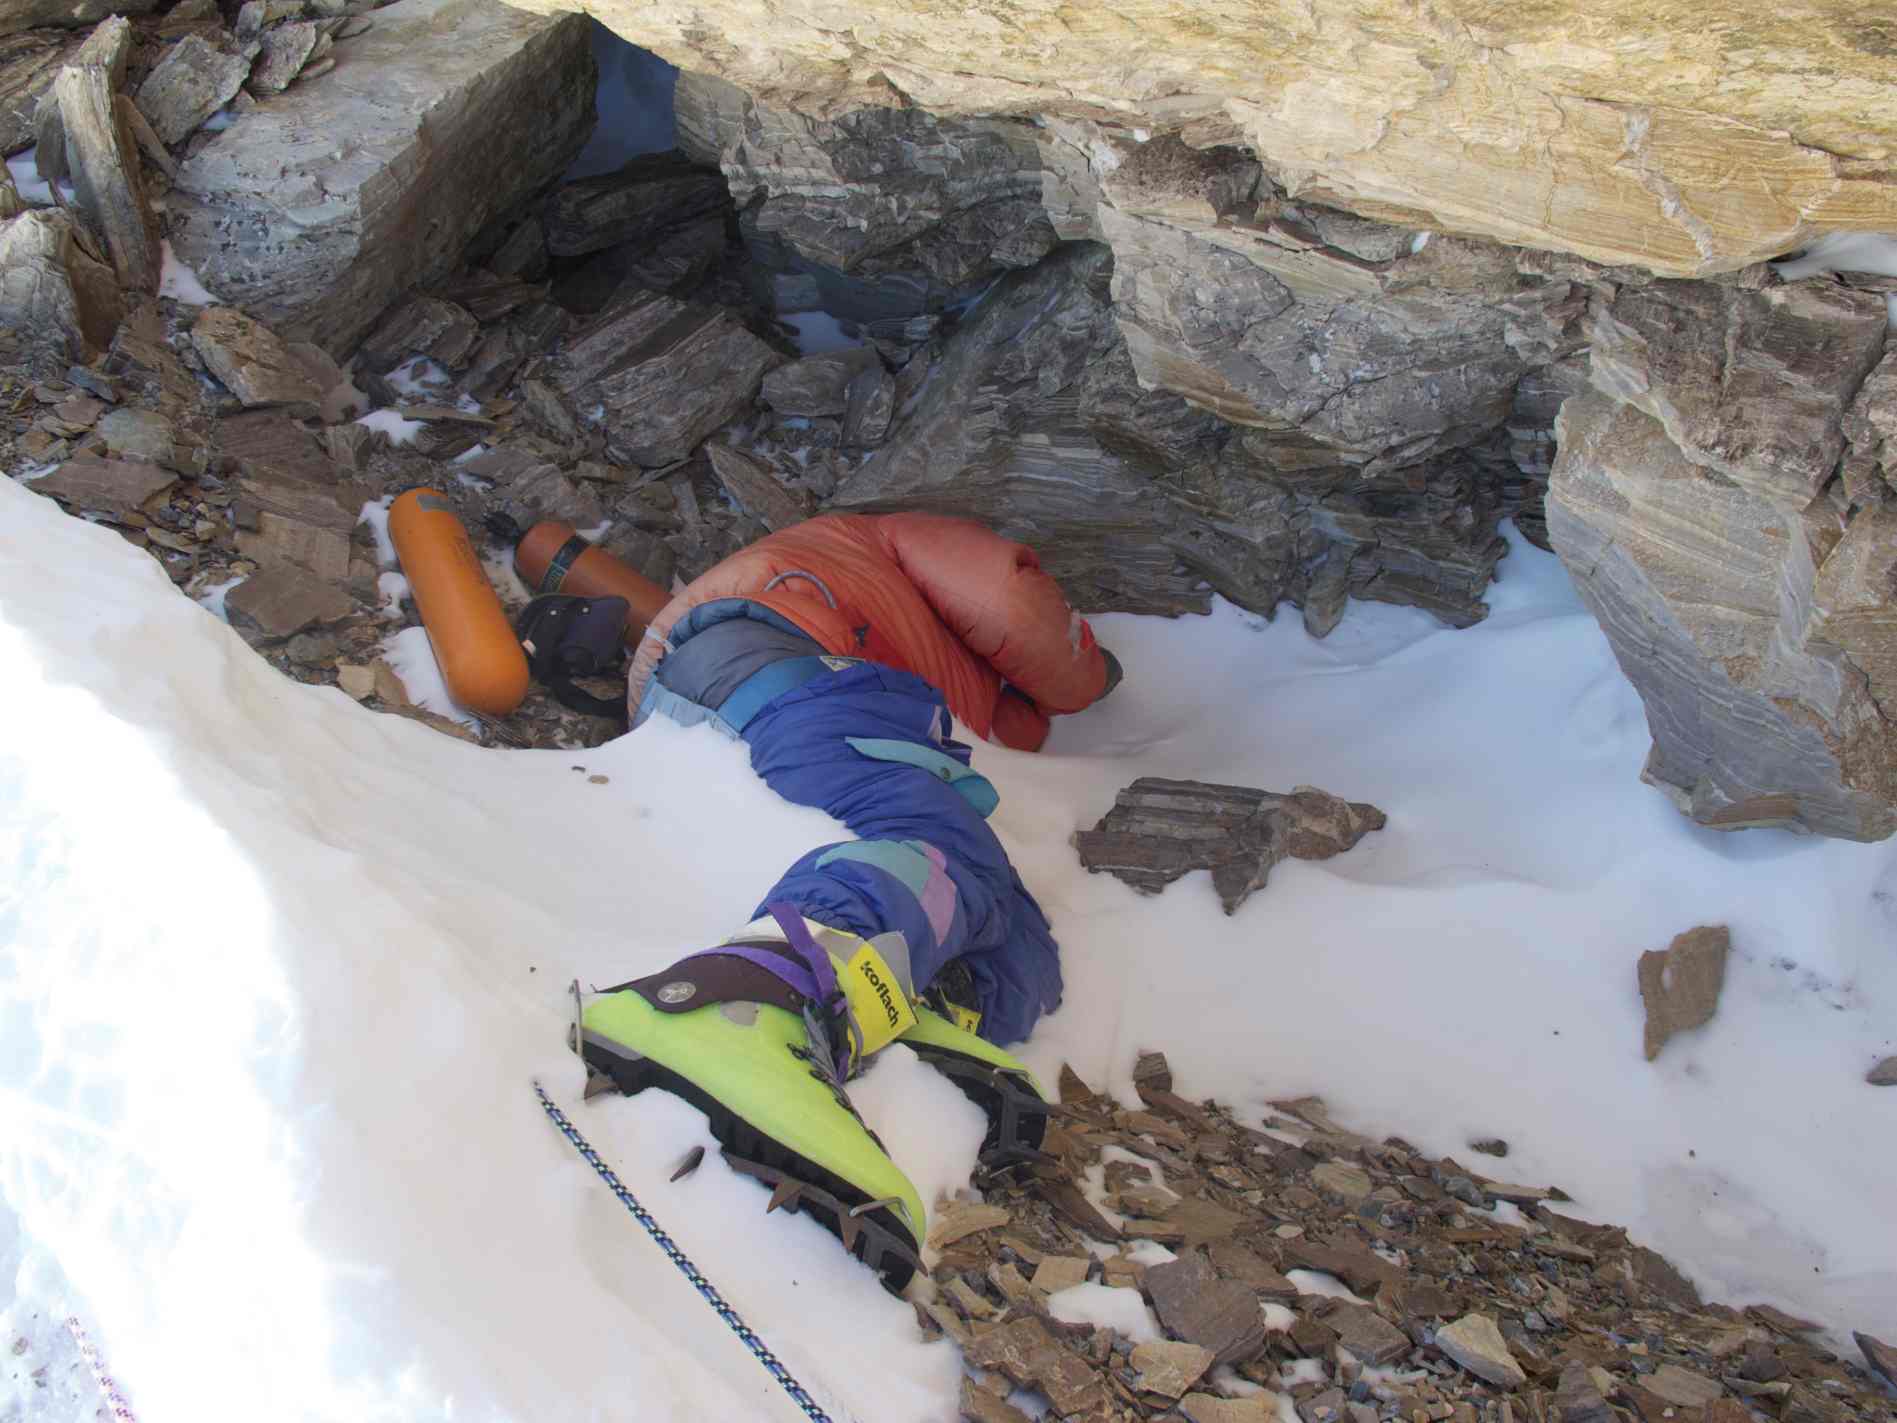 תמונה של "Green Boots", מטפס הודי שמת ברכס הצפון מזרחי של הר. אוורסט בשנת 1996